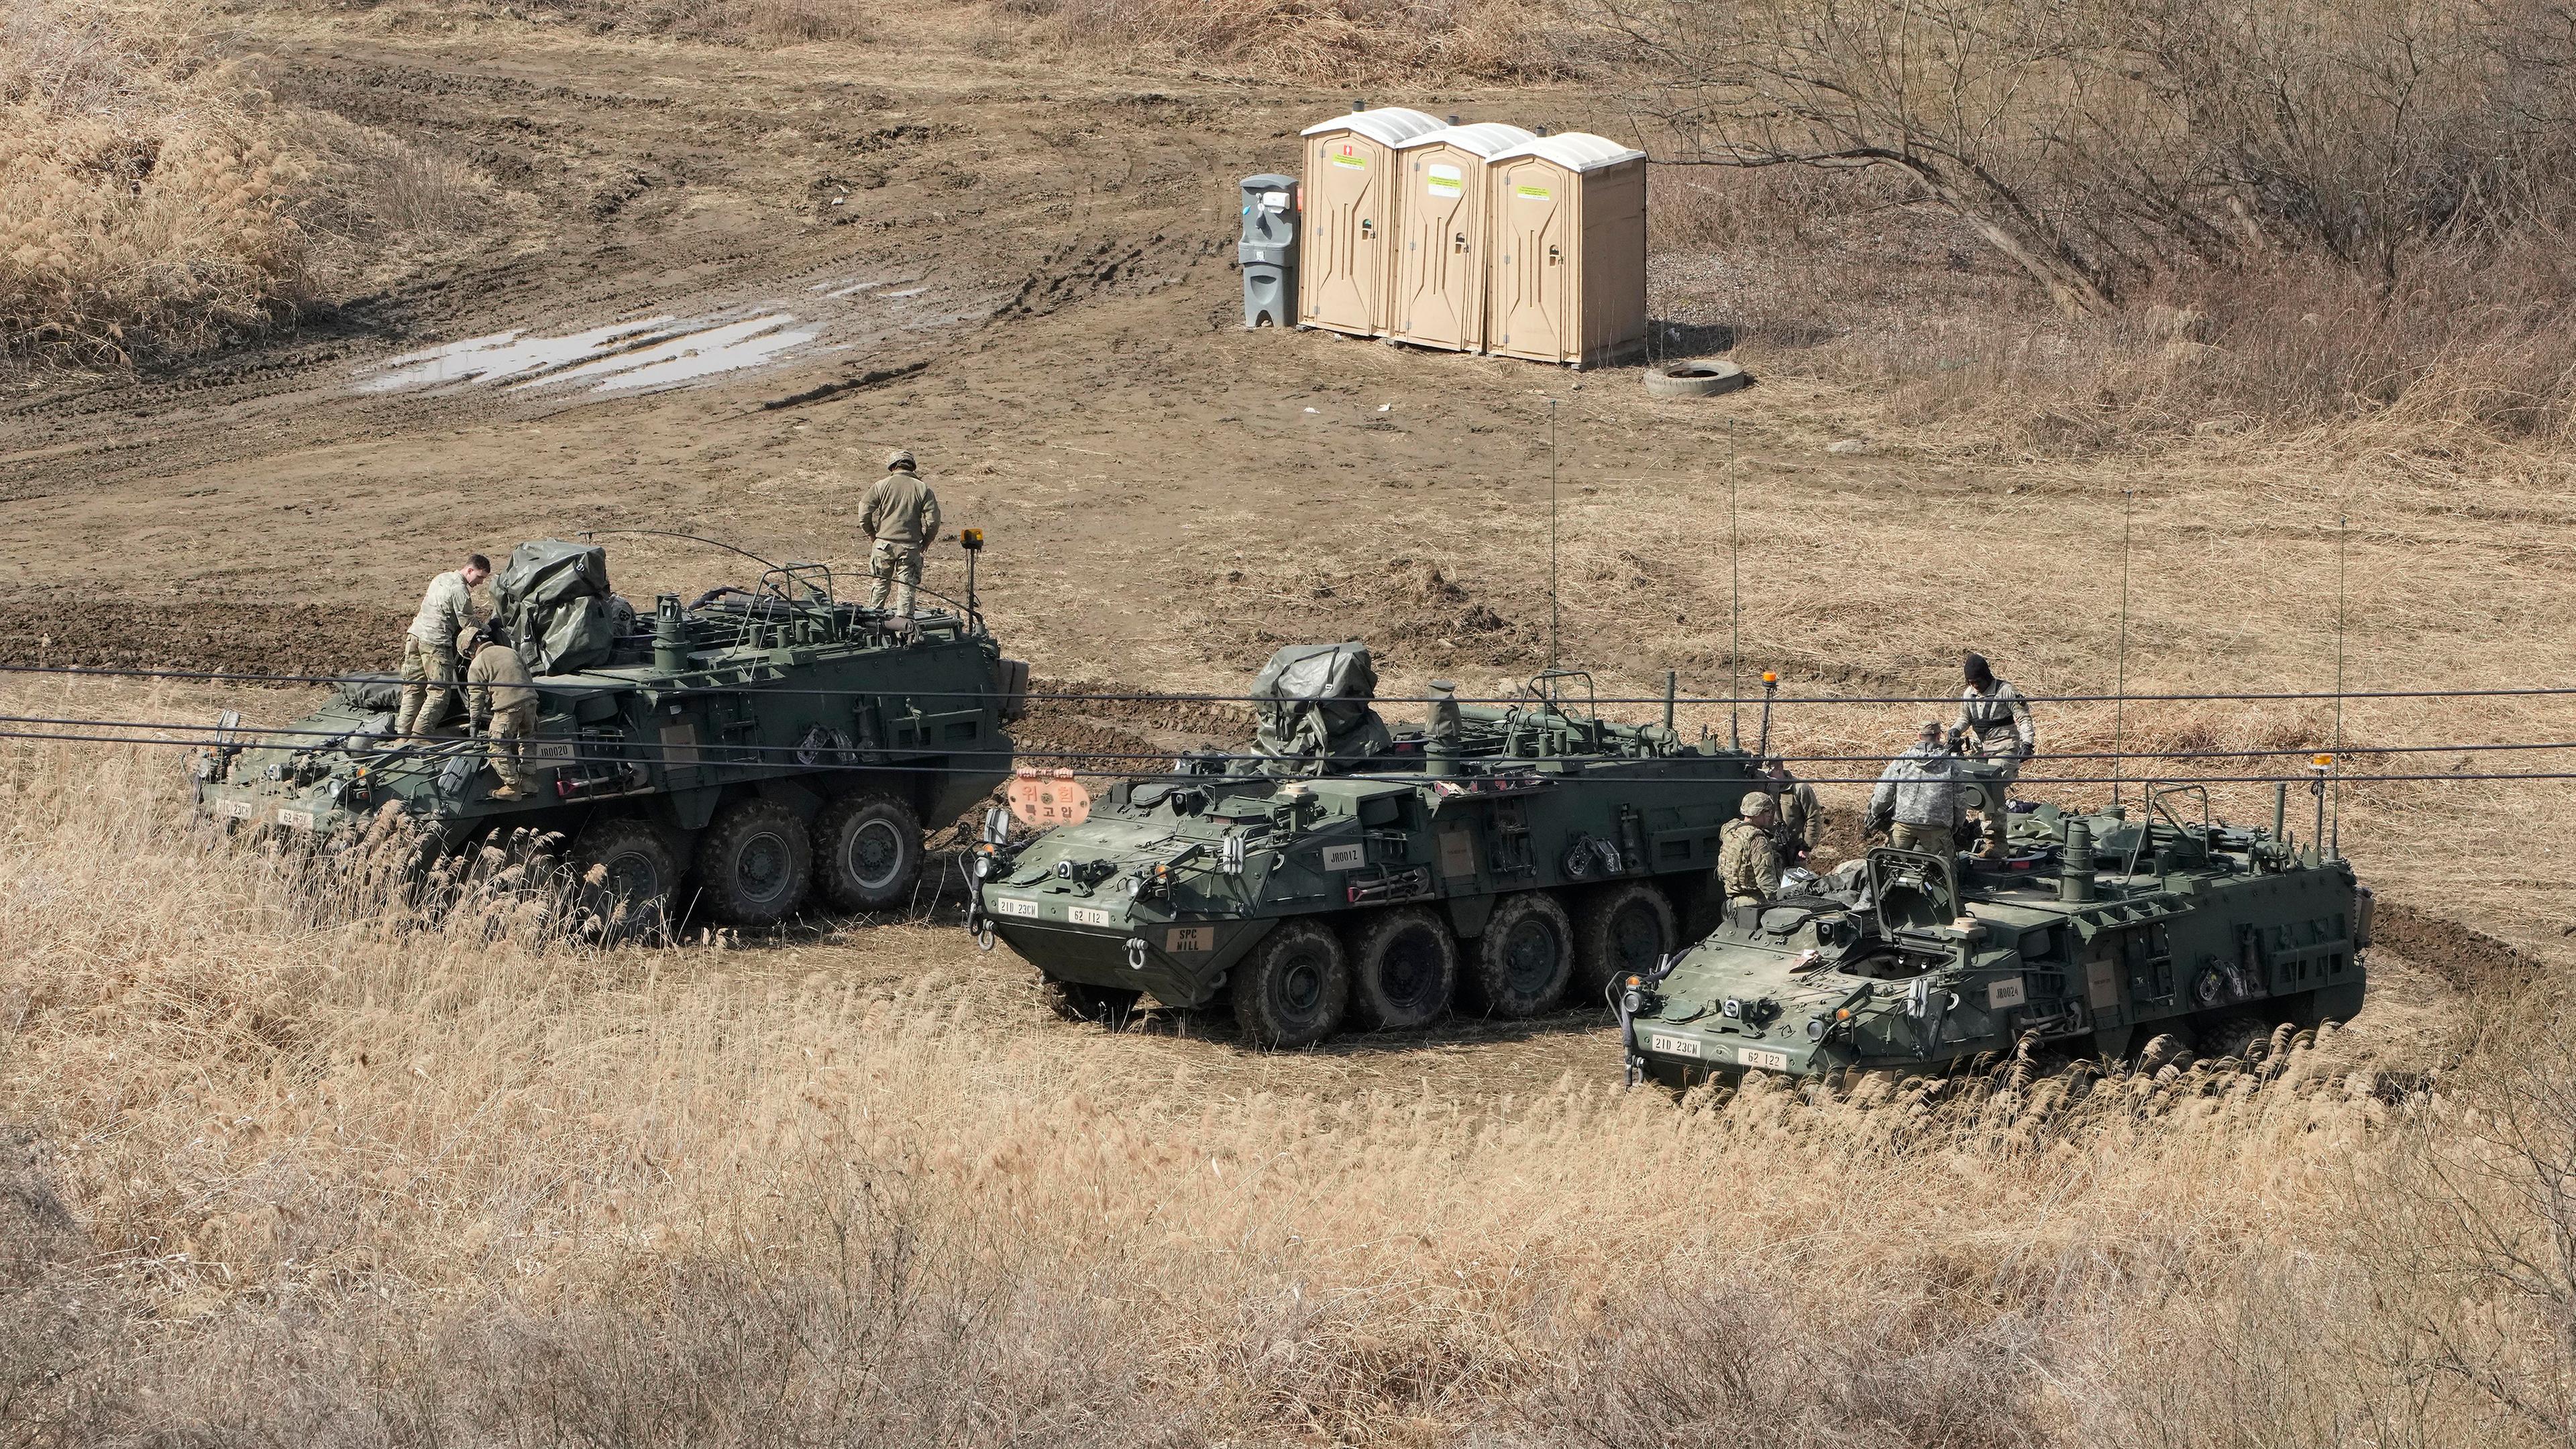 Südkorea, Yeoncheon: Soldaten der US-Armee arbeiten an ihren gepanzerten Fahrzeugen auf einem Übungsplatz nahe der Grenze zu Nordkorea.